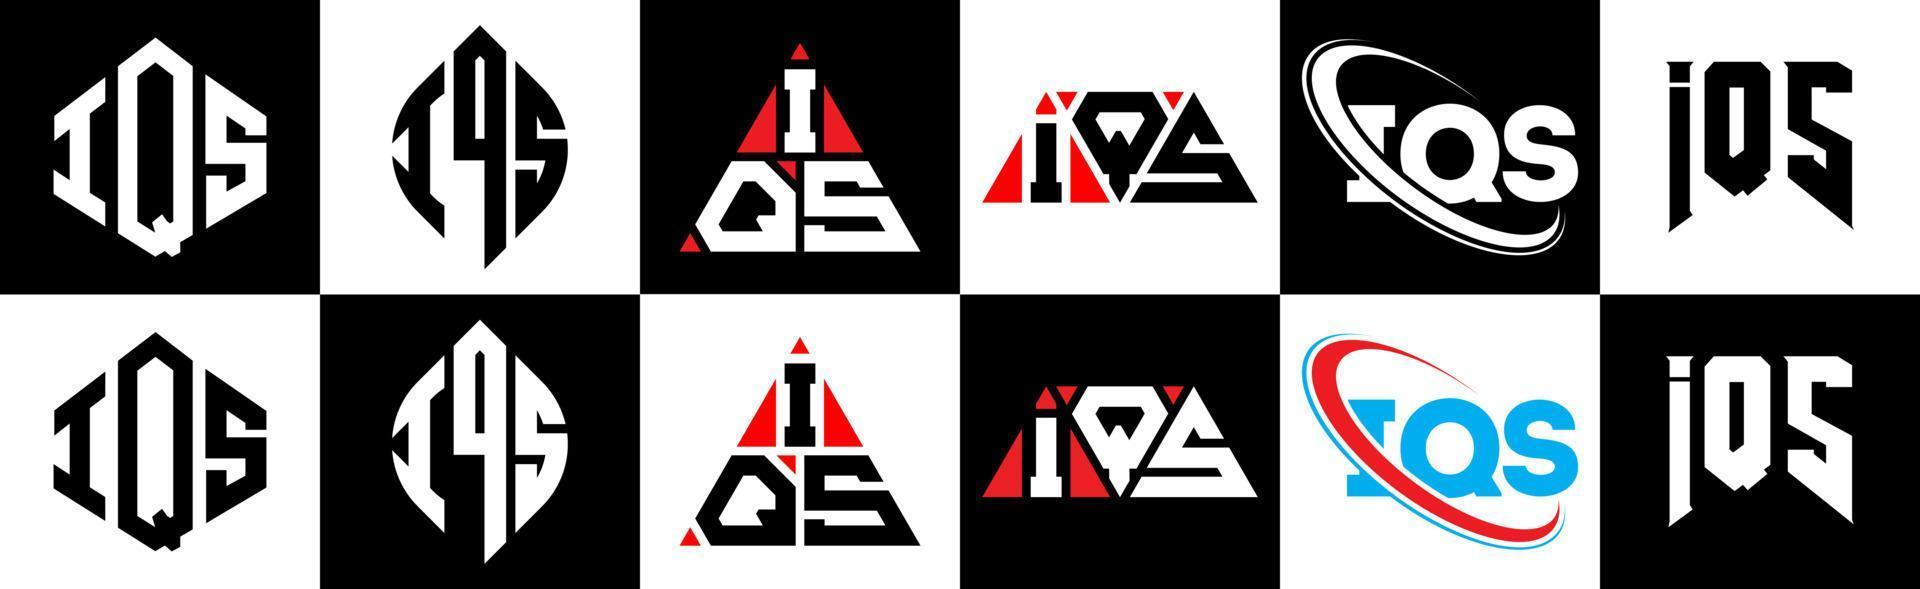 Diseño de logotipo de letra iqs en seis estilos. iqs polígono, círculo, triángulo, hexágono, estilo plano y simple con logotipo de letra de variación de color blanco y negro en una mesa de trabajo. logotipo minimalista y clásico de iqs vector